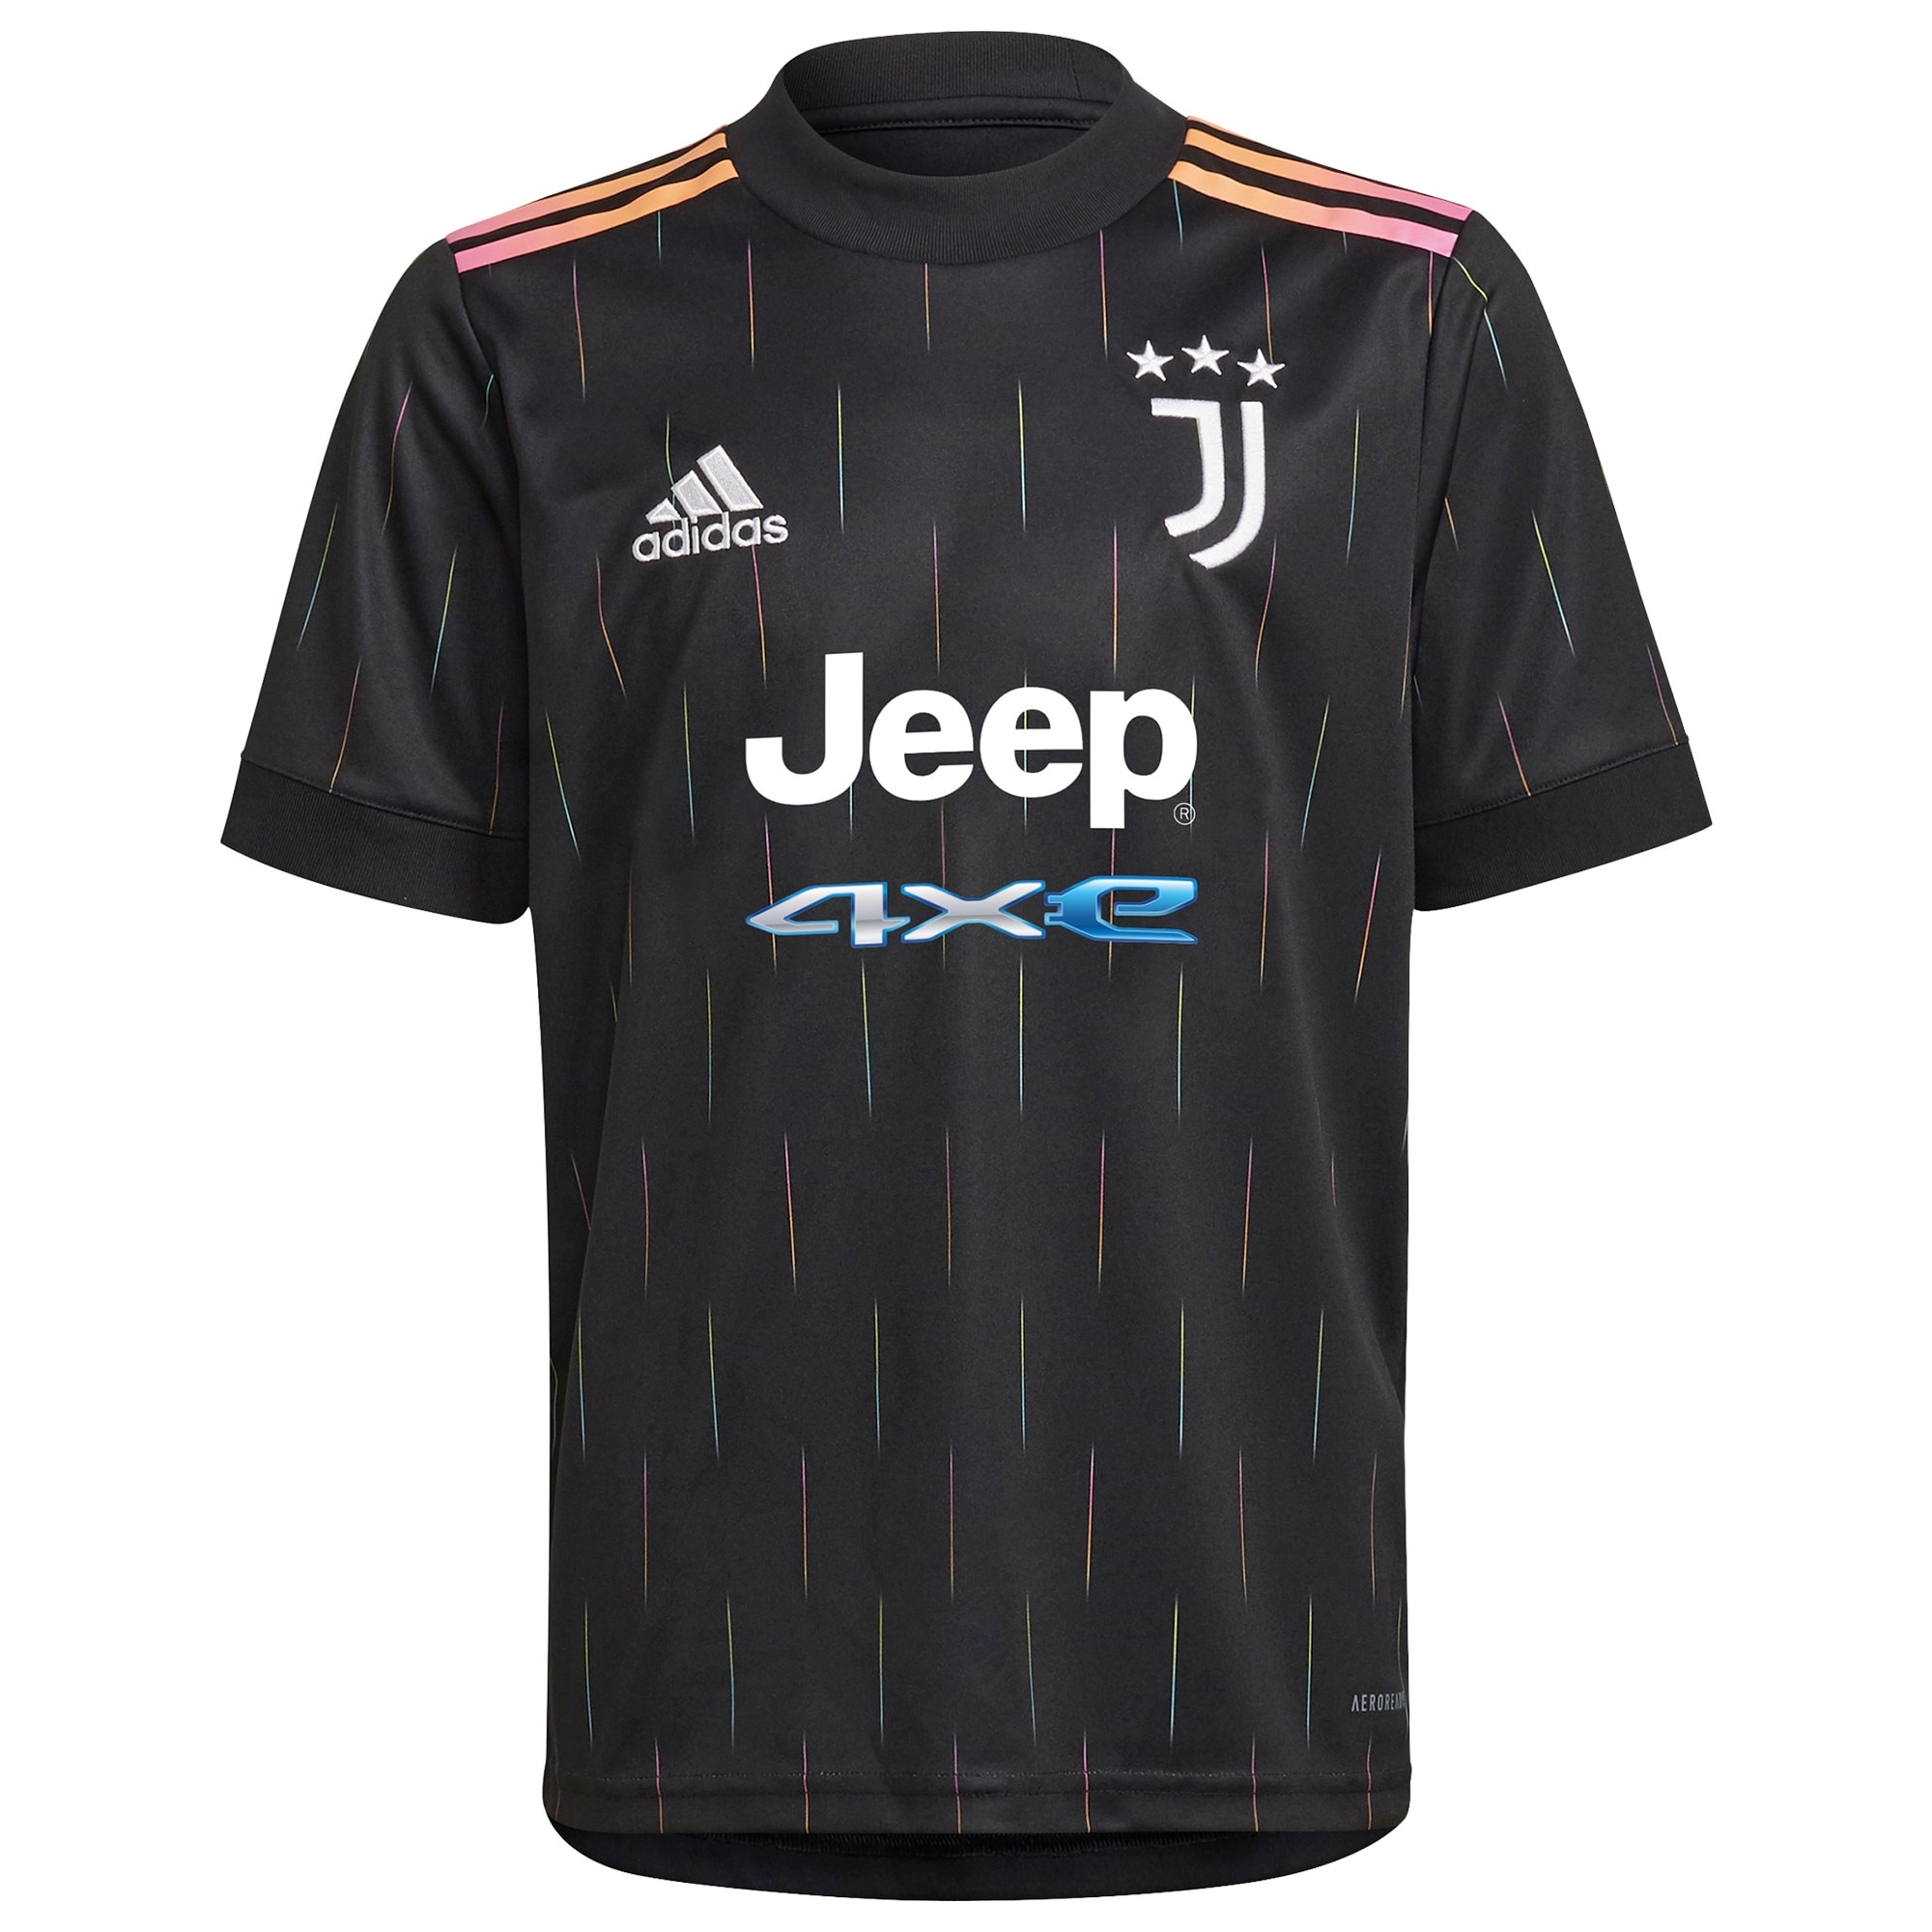 Juventus Away Shirt 2021-22 with Ramsey 8 printing